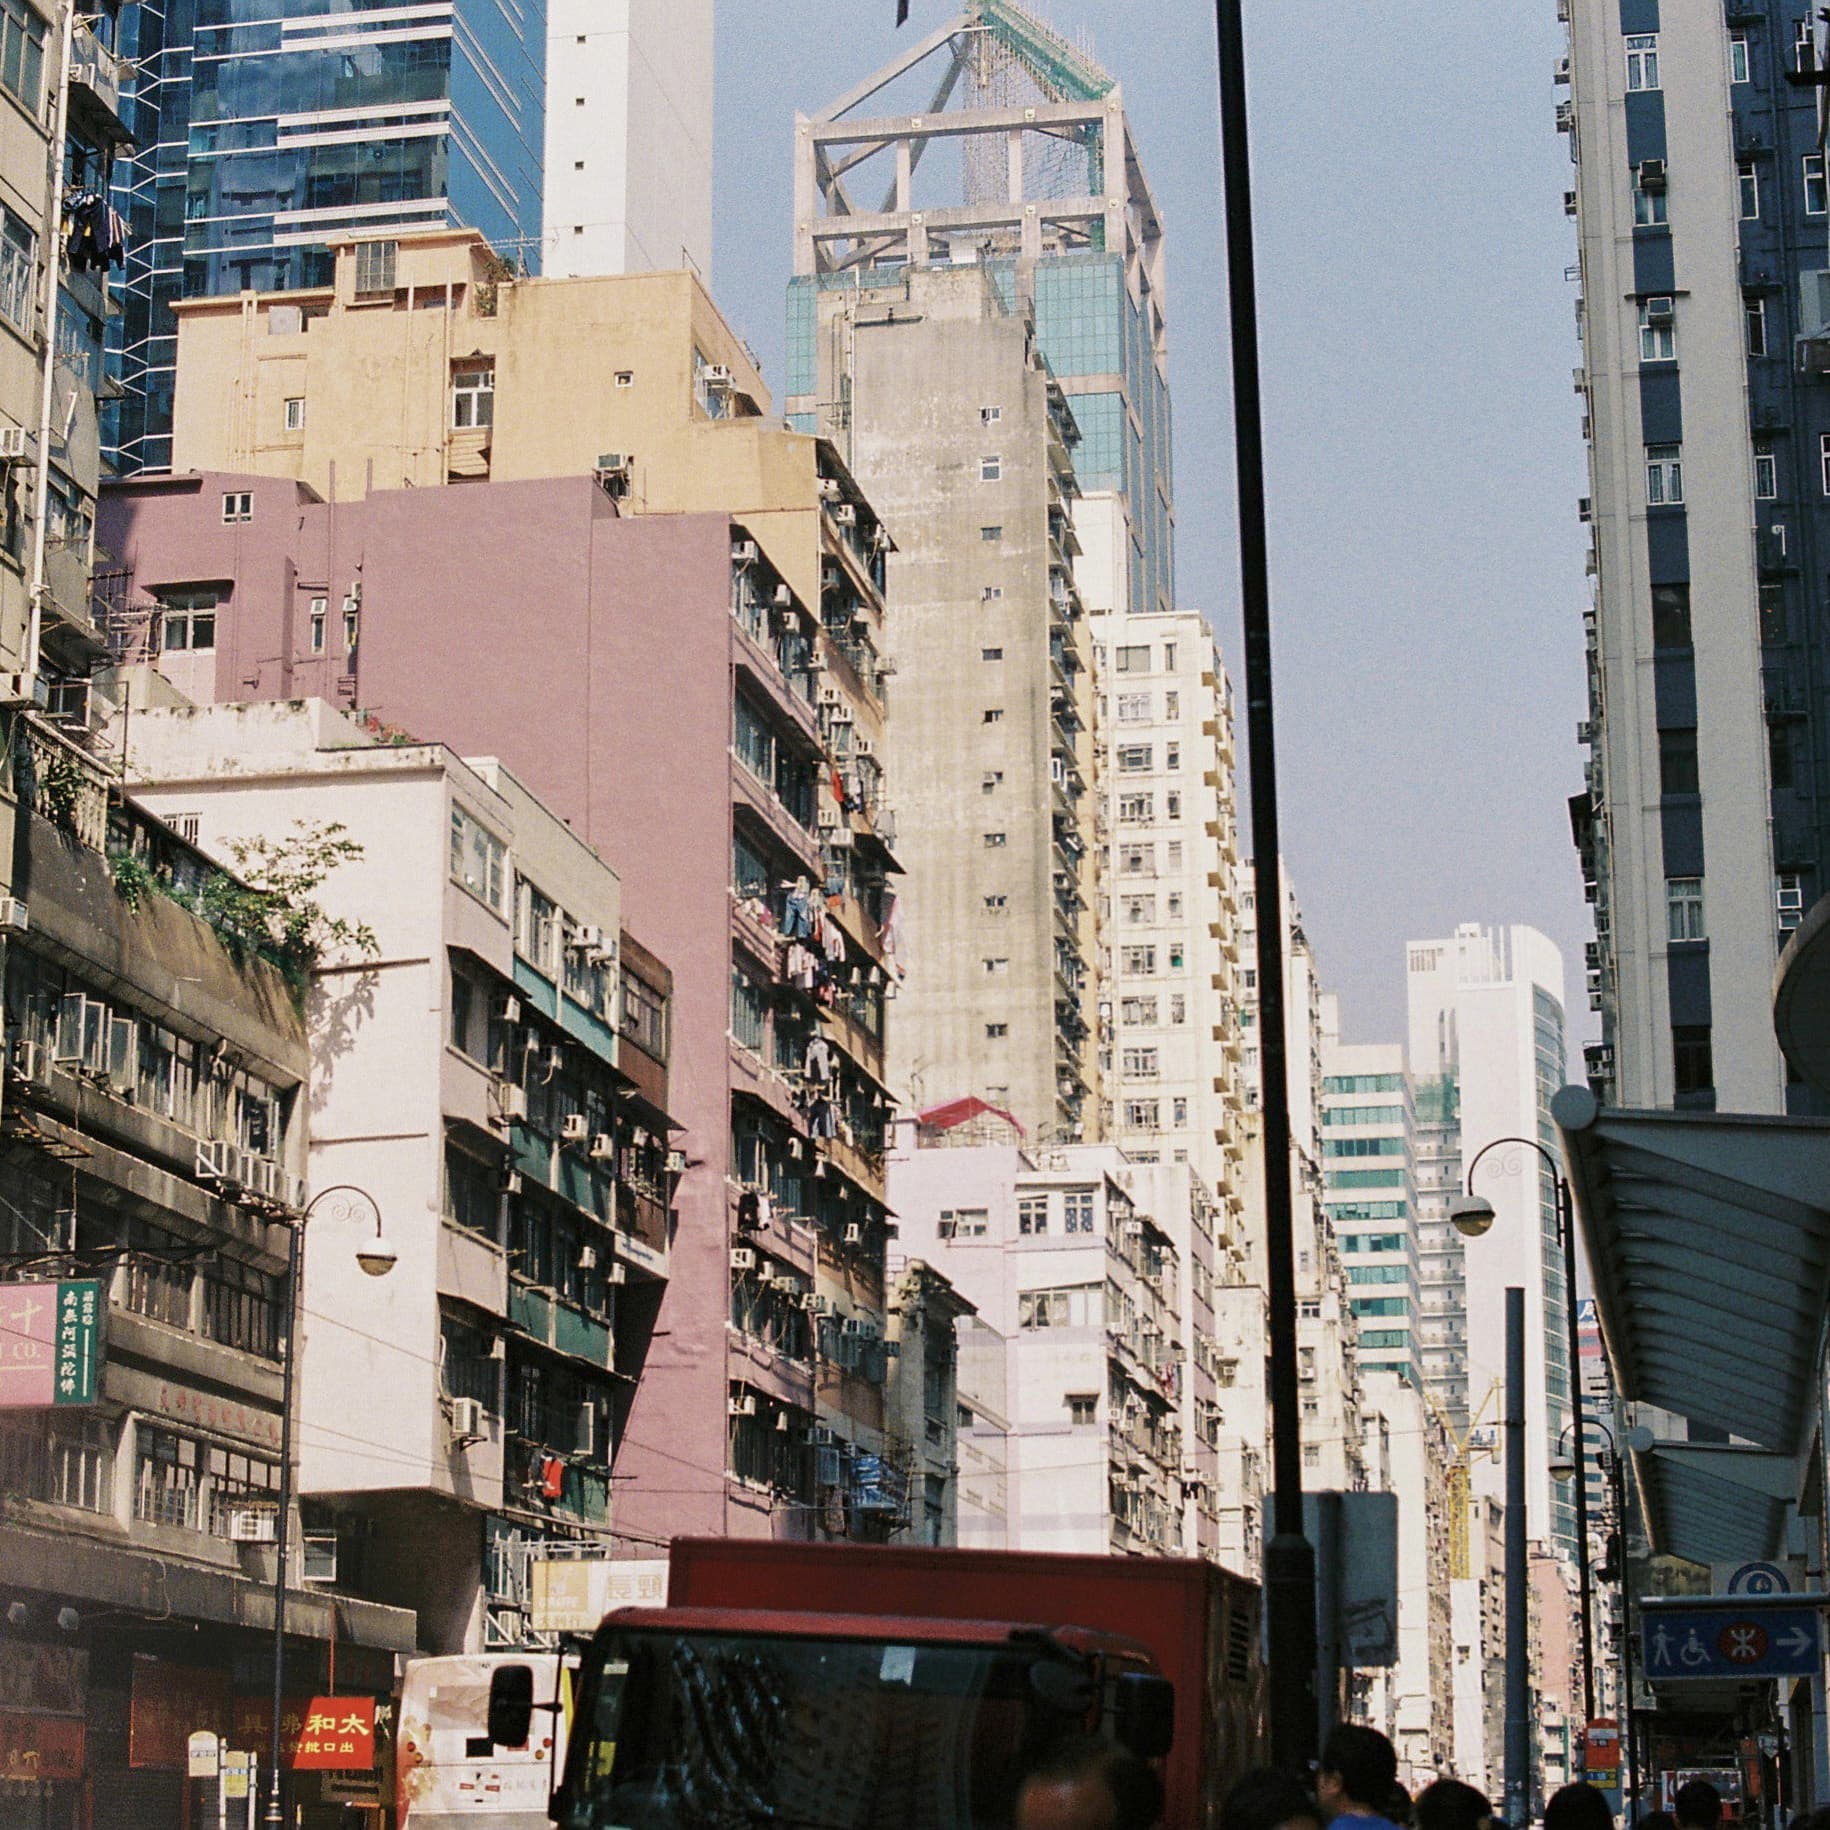 Hong Kong. Neighborhood.